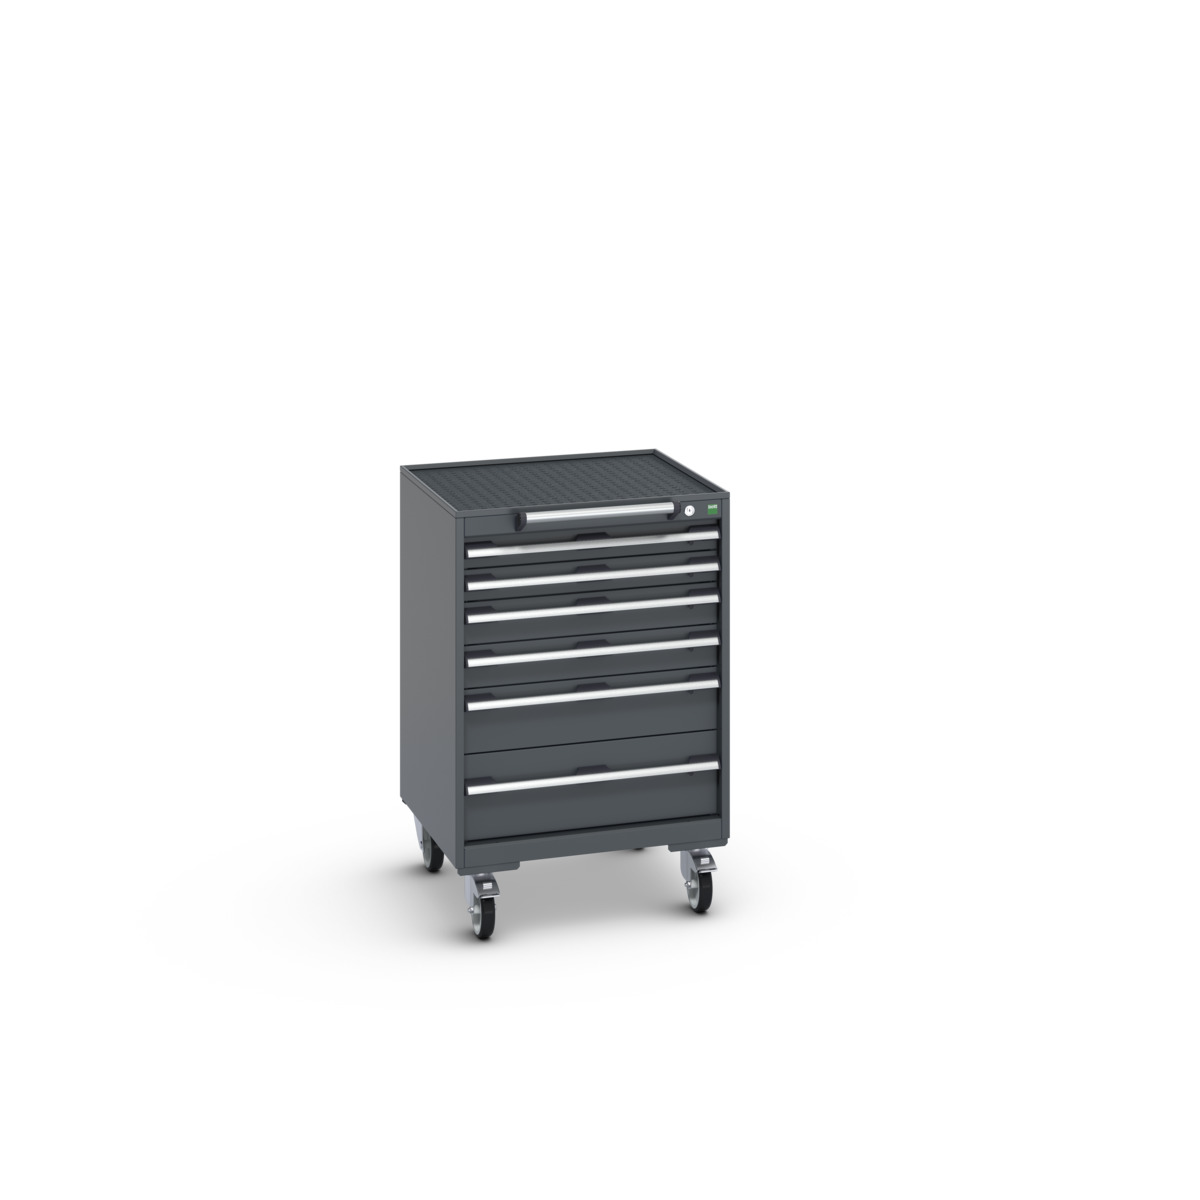 40402035.77V - cubio mobile cabinet